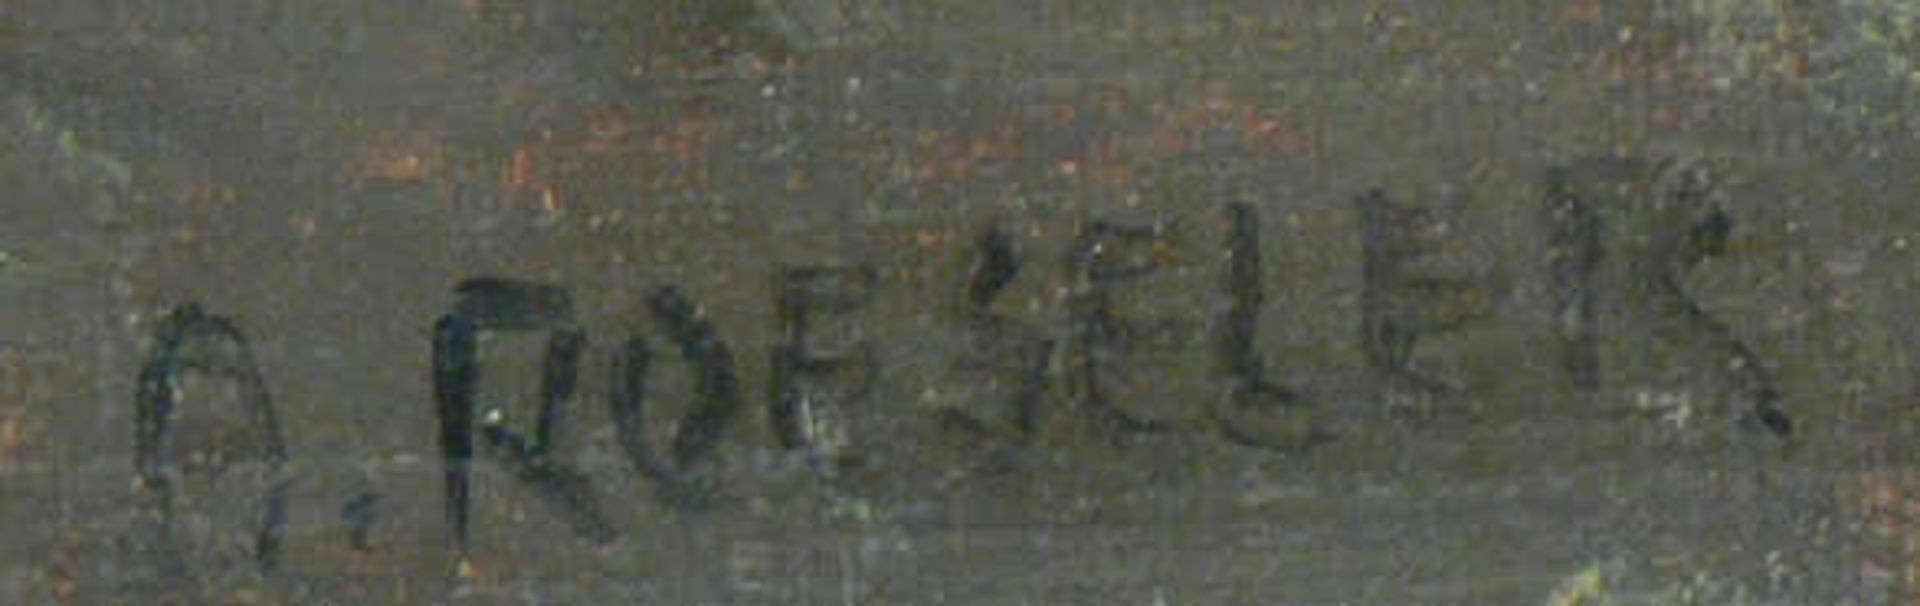 August Roeseler, 1866-1934, Ölgemälde auf Leinwand. "Bauer beim Schnupfen", rechts unten Signatur - Bild 2 aus 3